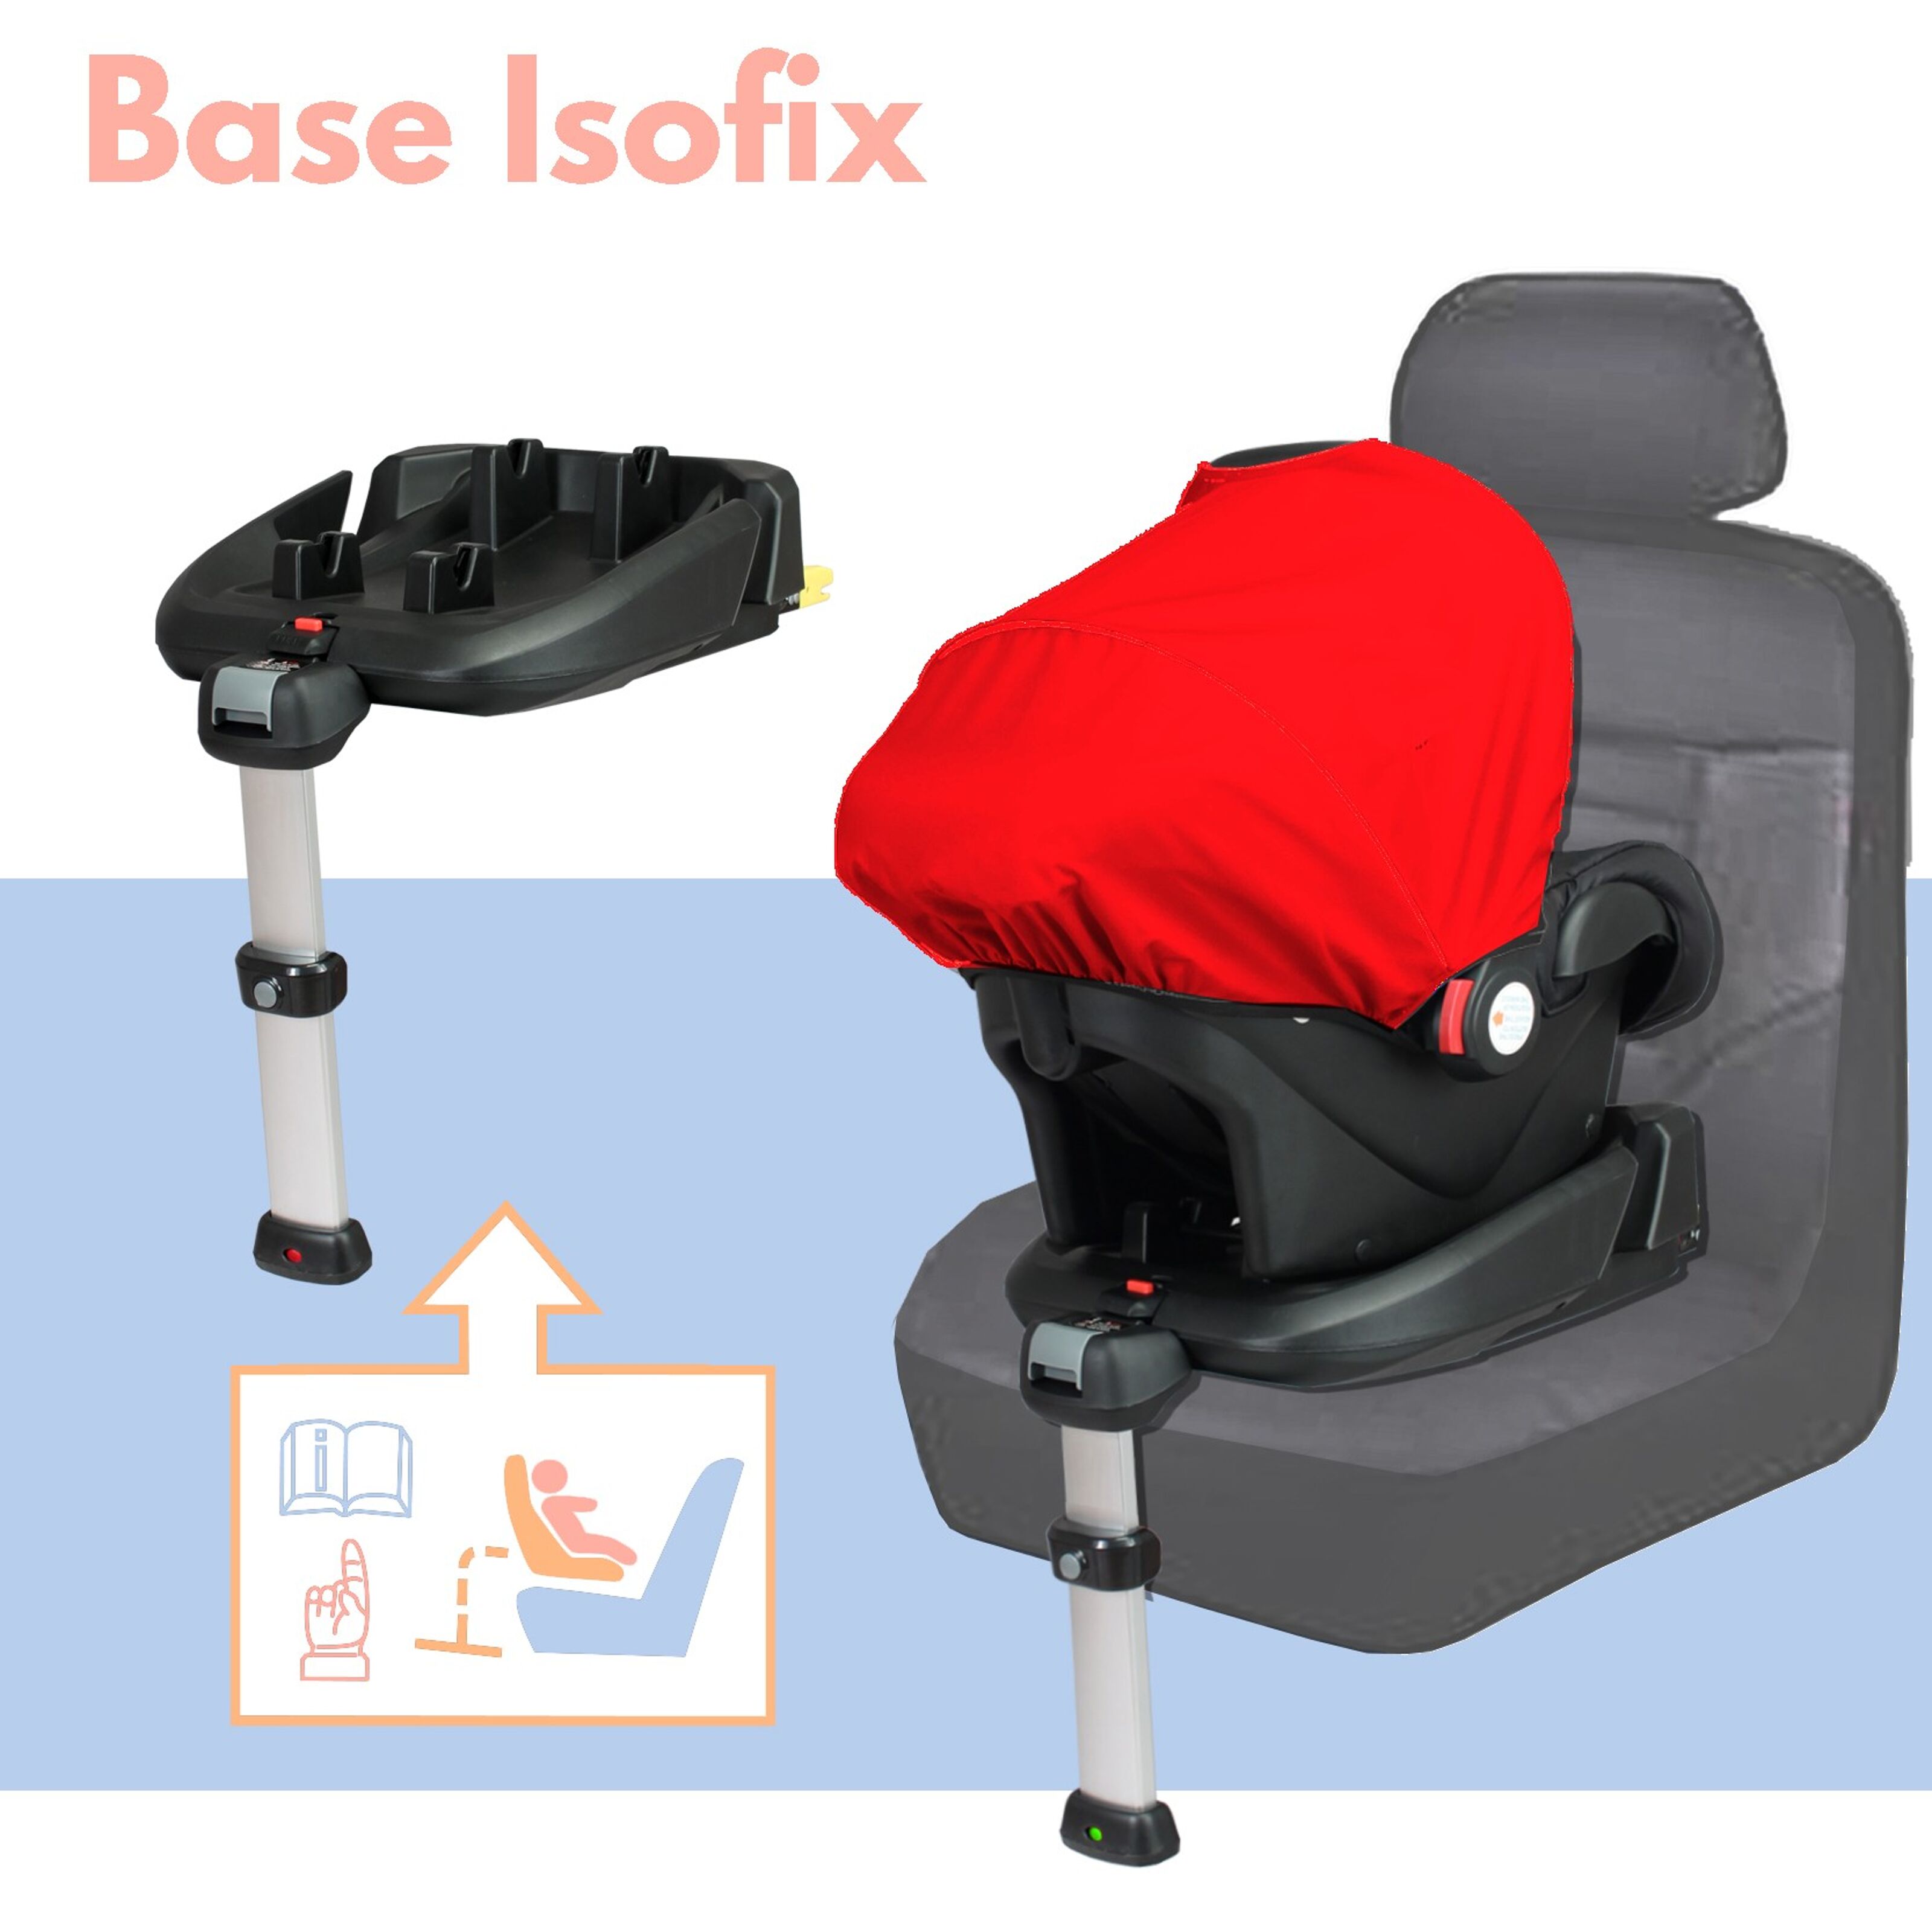 Achat Base isofix pour siège auto en gros